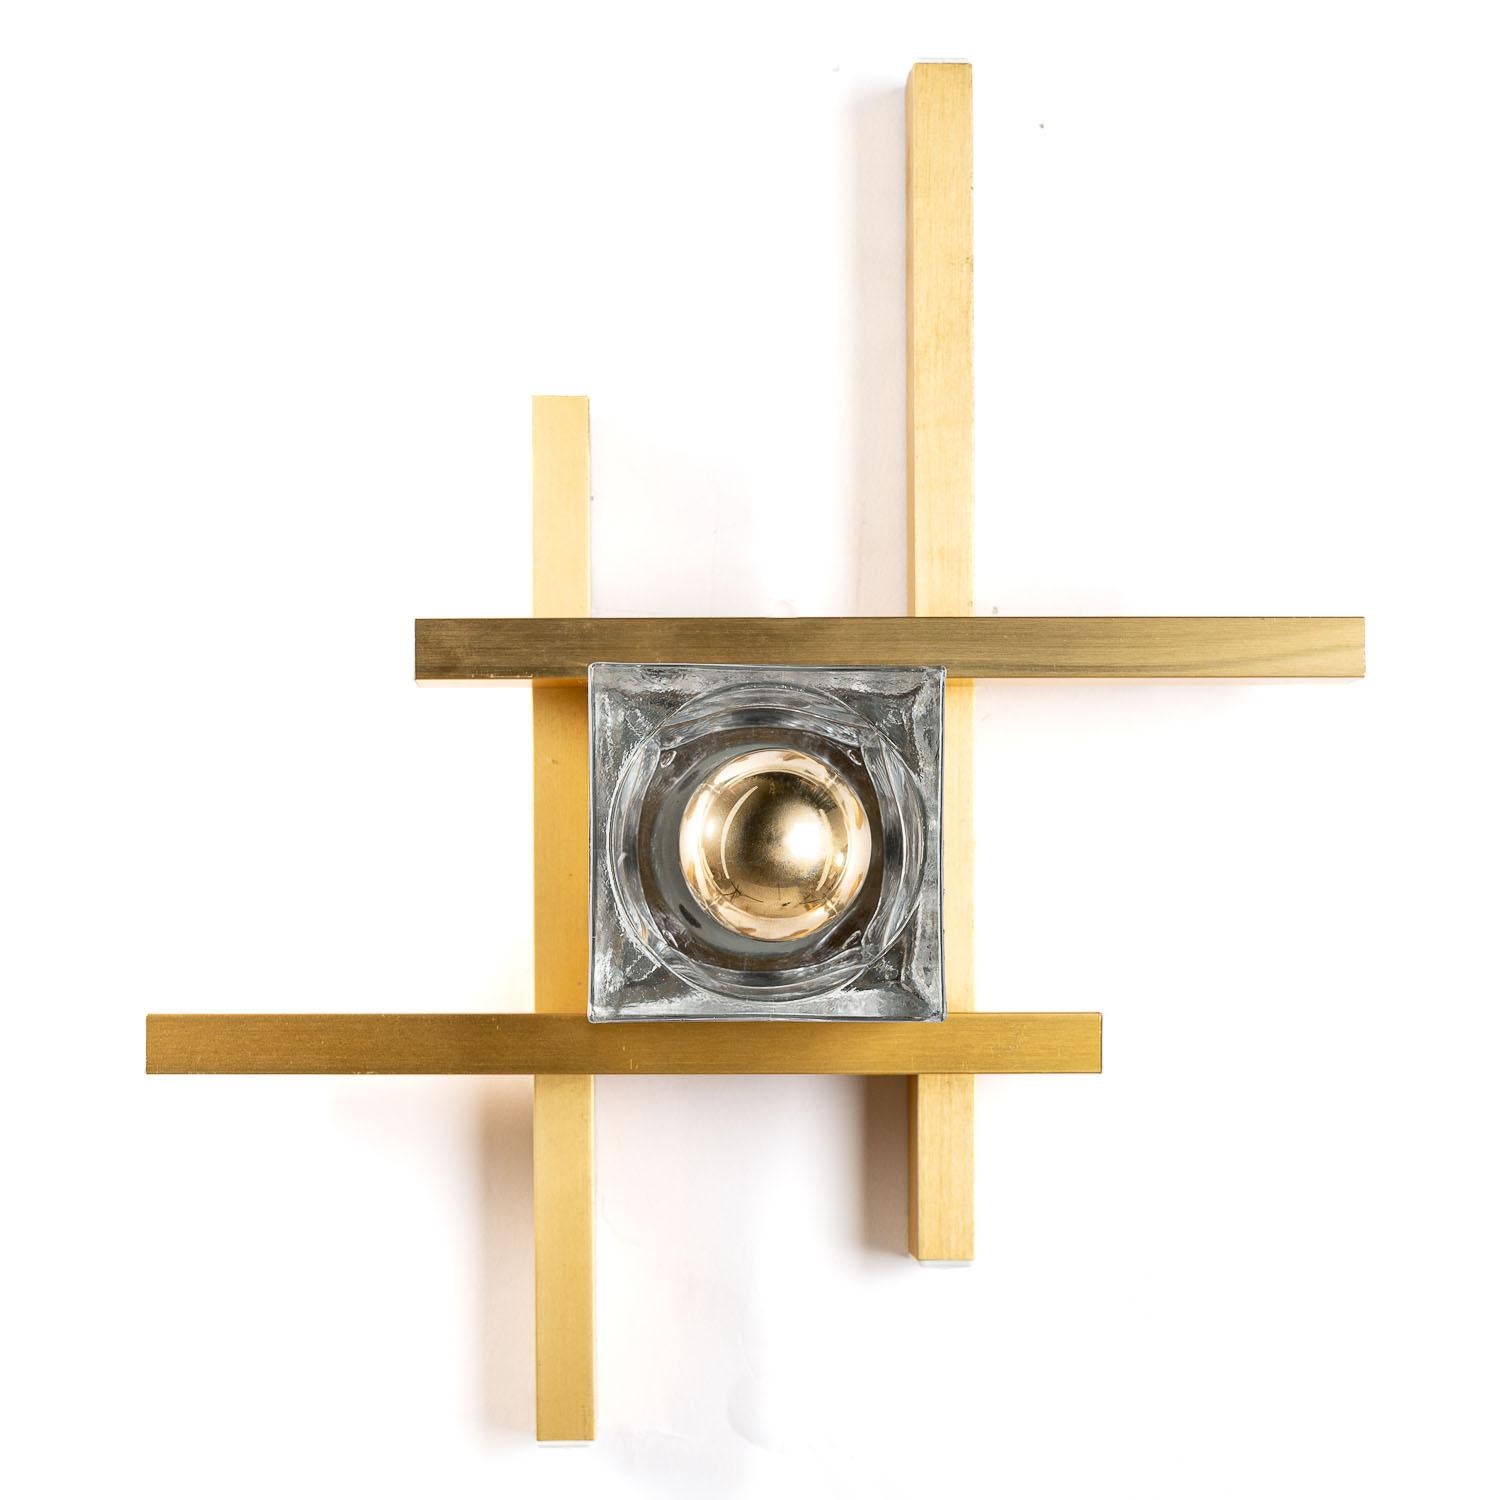 Großartiger Gaetano Sciolari Scone mit einer wunderbaren Kombination aus goldfarbenen Aluminiumstäben und einer Glühbirne im Inneren des Murano-Glaswürfels. 

Voll funktionsfähig und einsatzbereit. Ausgestattet mit einer europäischen Verkabelung,